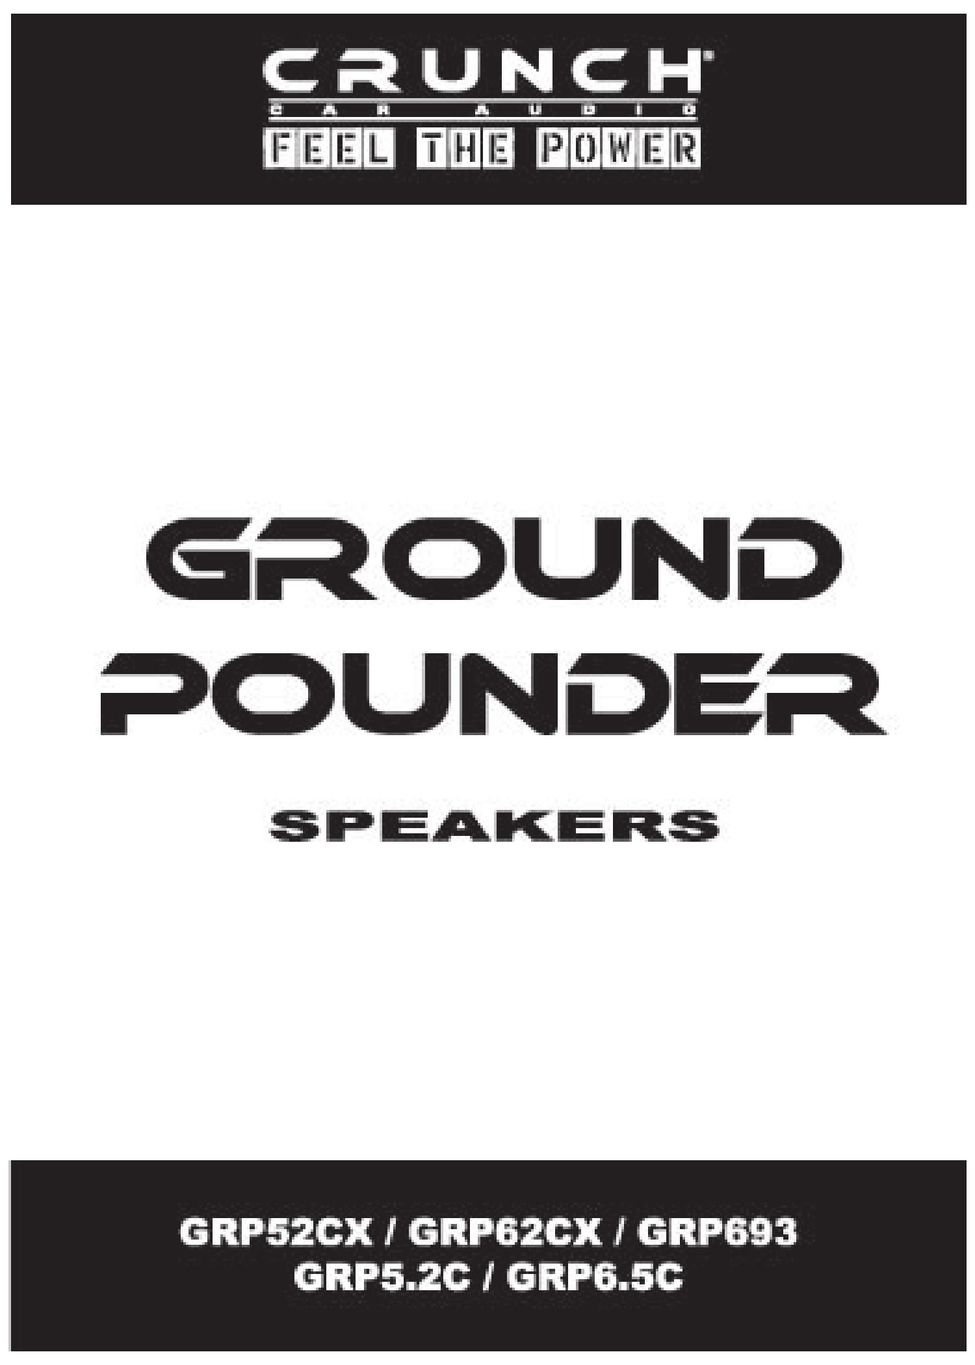 Crunch GRP62CX Speaker User Manual